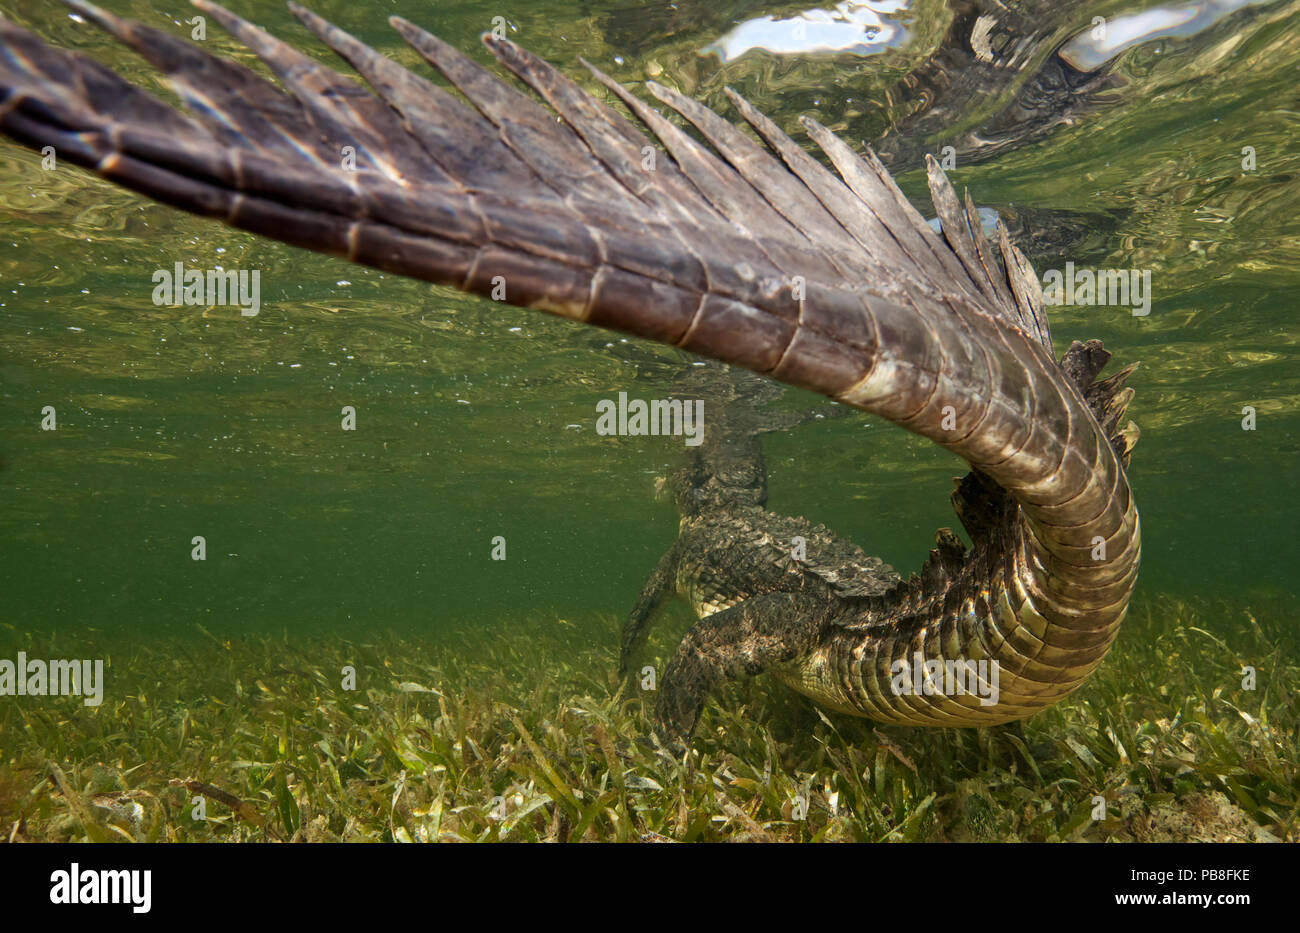 Coccodrillo americano (Crocodylus acutus) vista posteriore di animale in appoggio in acque poco profonde, close up di coda, Banco Chinchorro Riserva della Biosfera, regione dei Caraibi, Messico Foto Stock